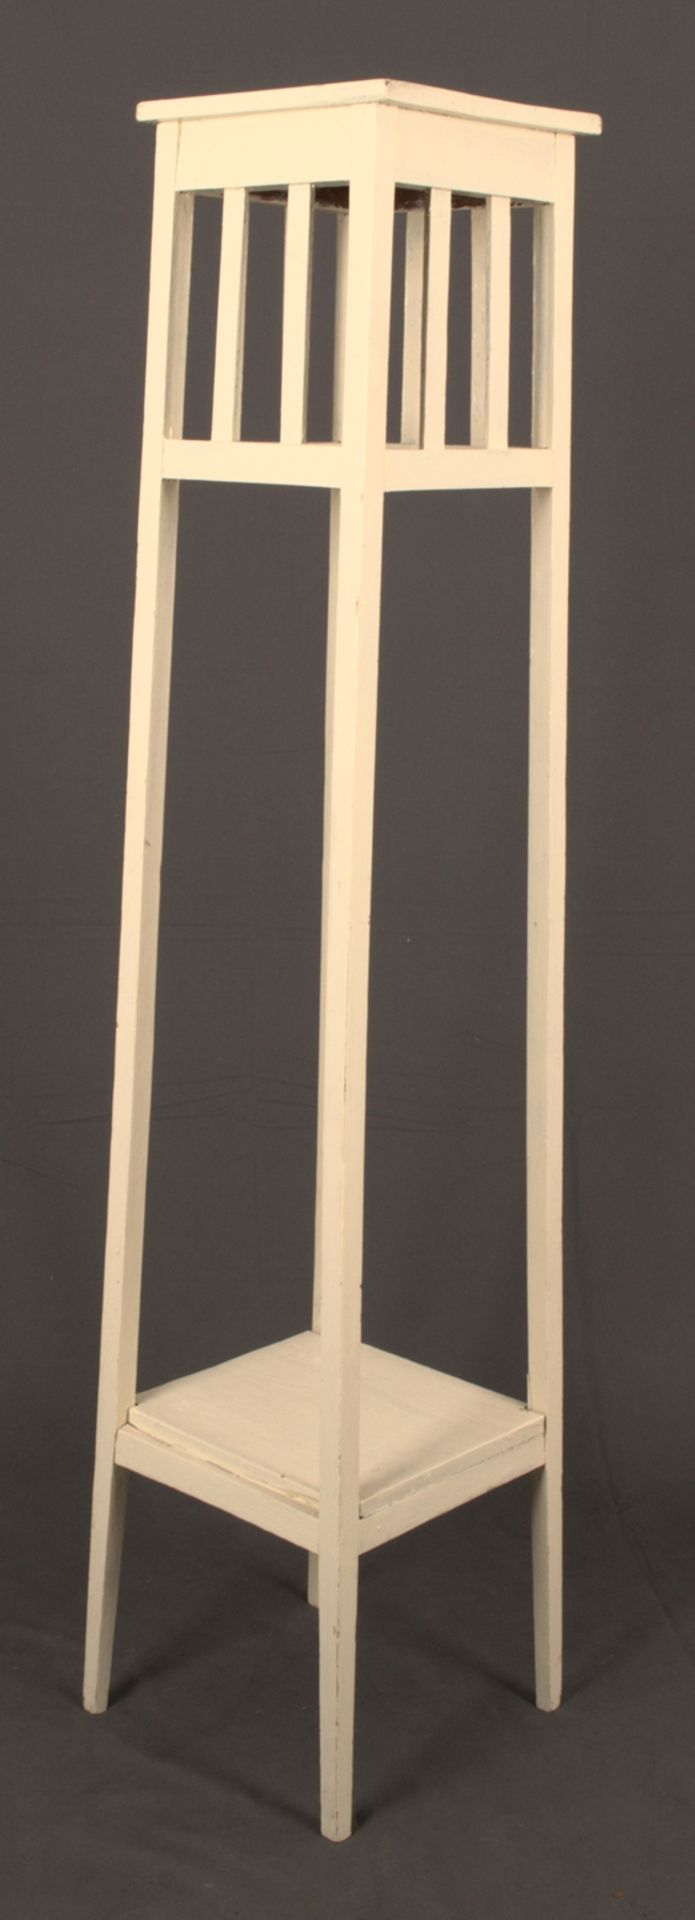 Blumenständer. Weiß lackiertes Holzgestell mit zwei Ablagen/Standflächen von je ca. 26 x 27 cm, max.